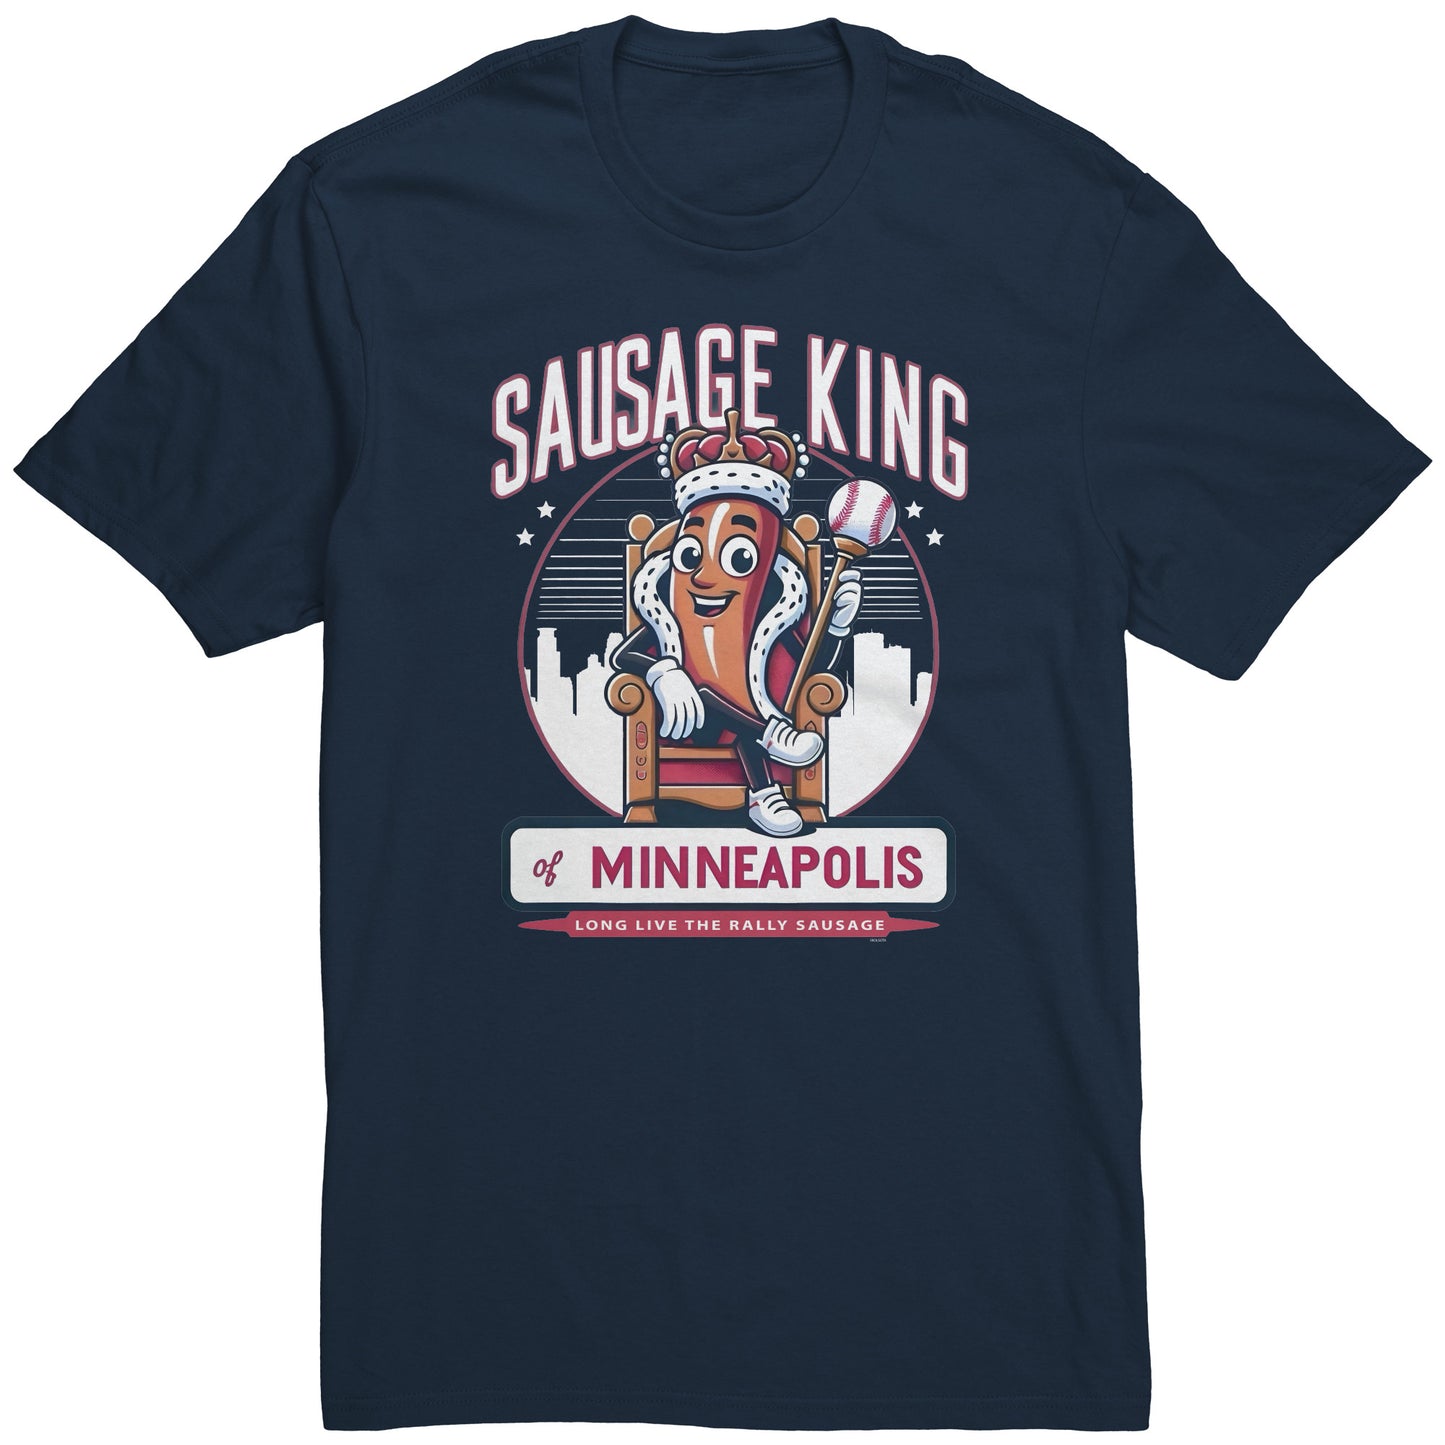 Sausage King of Minneapolis - Rally Sausage T-Shirt